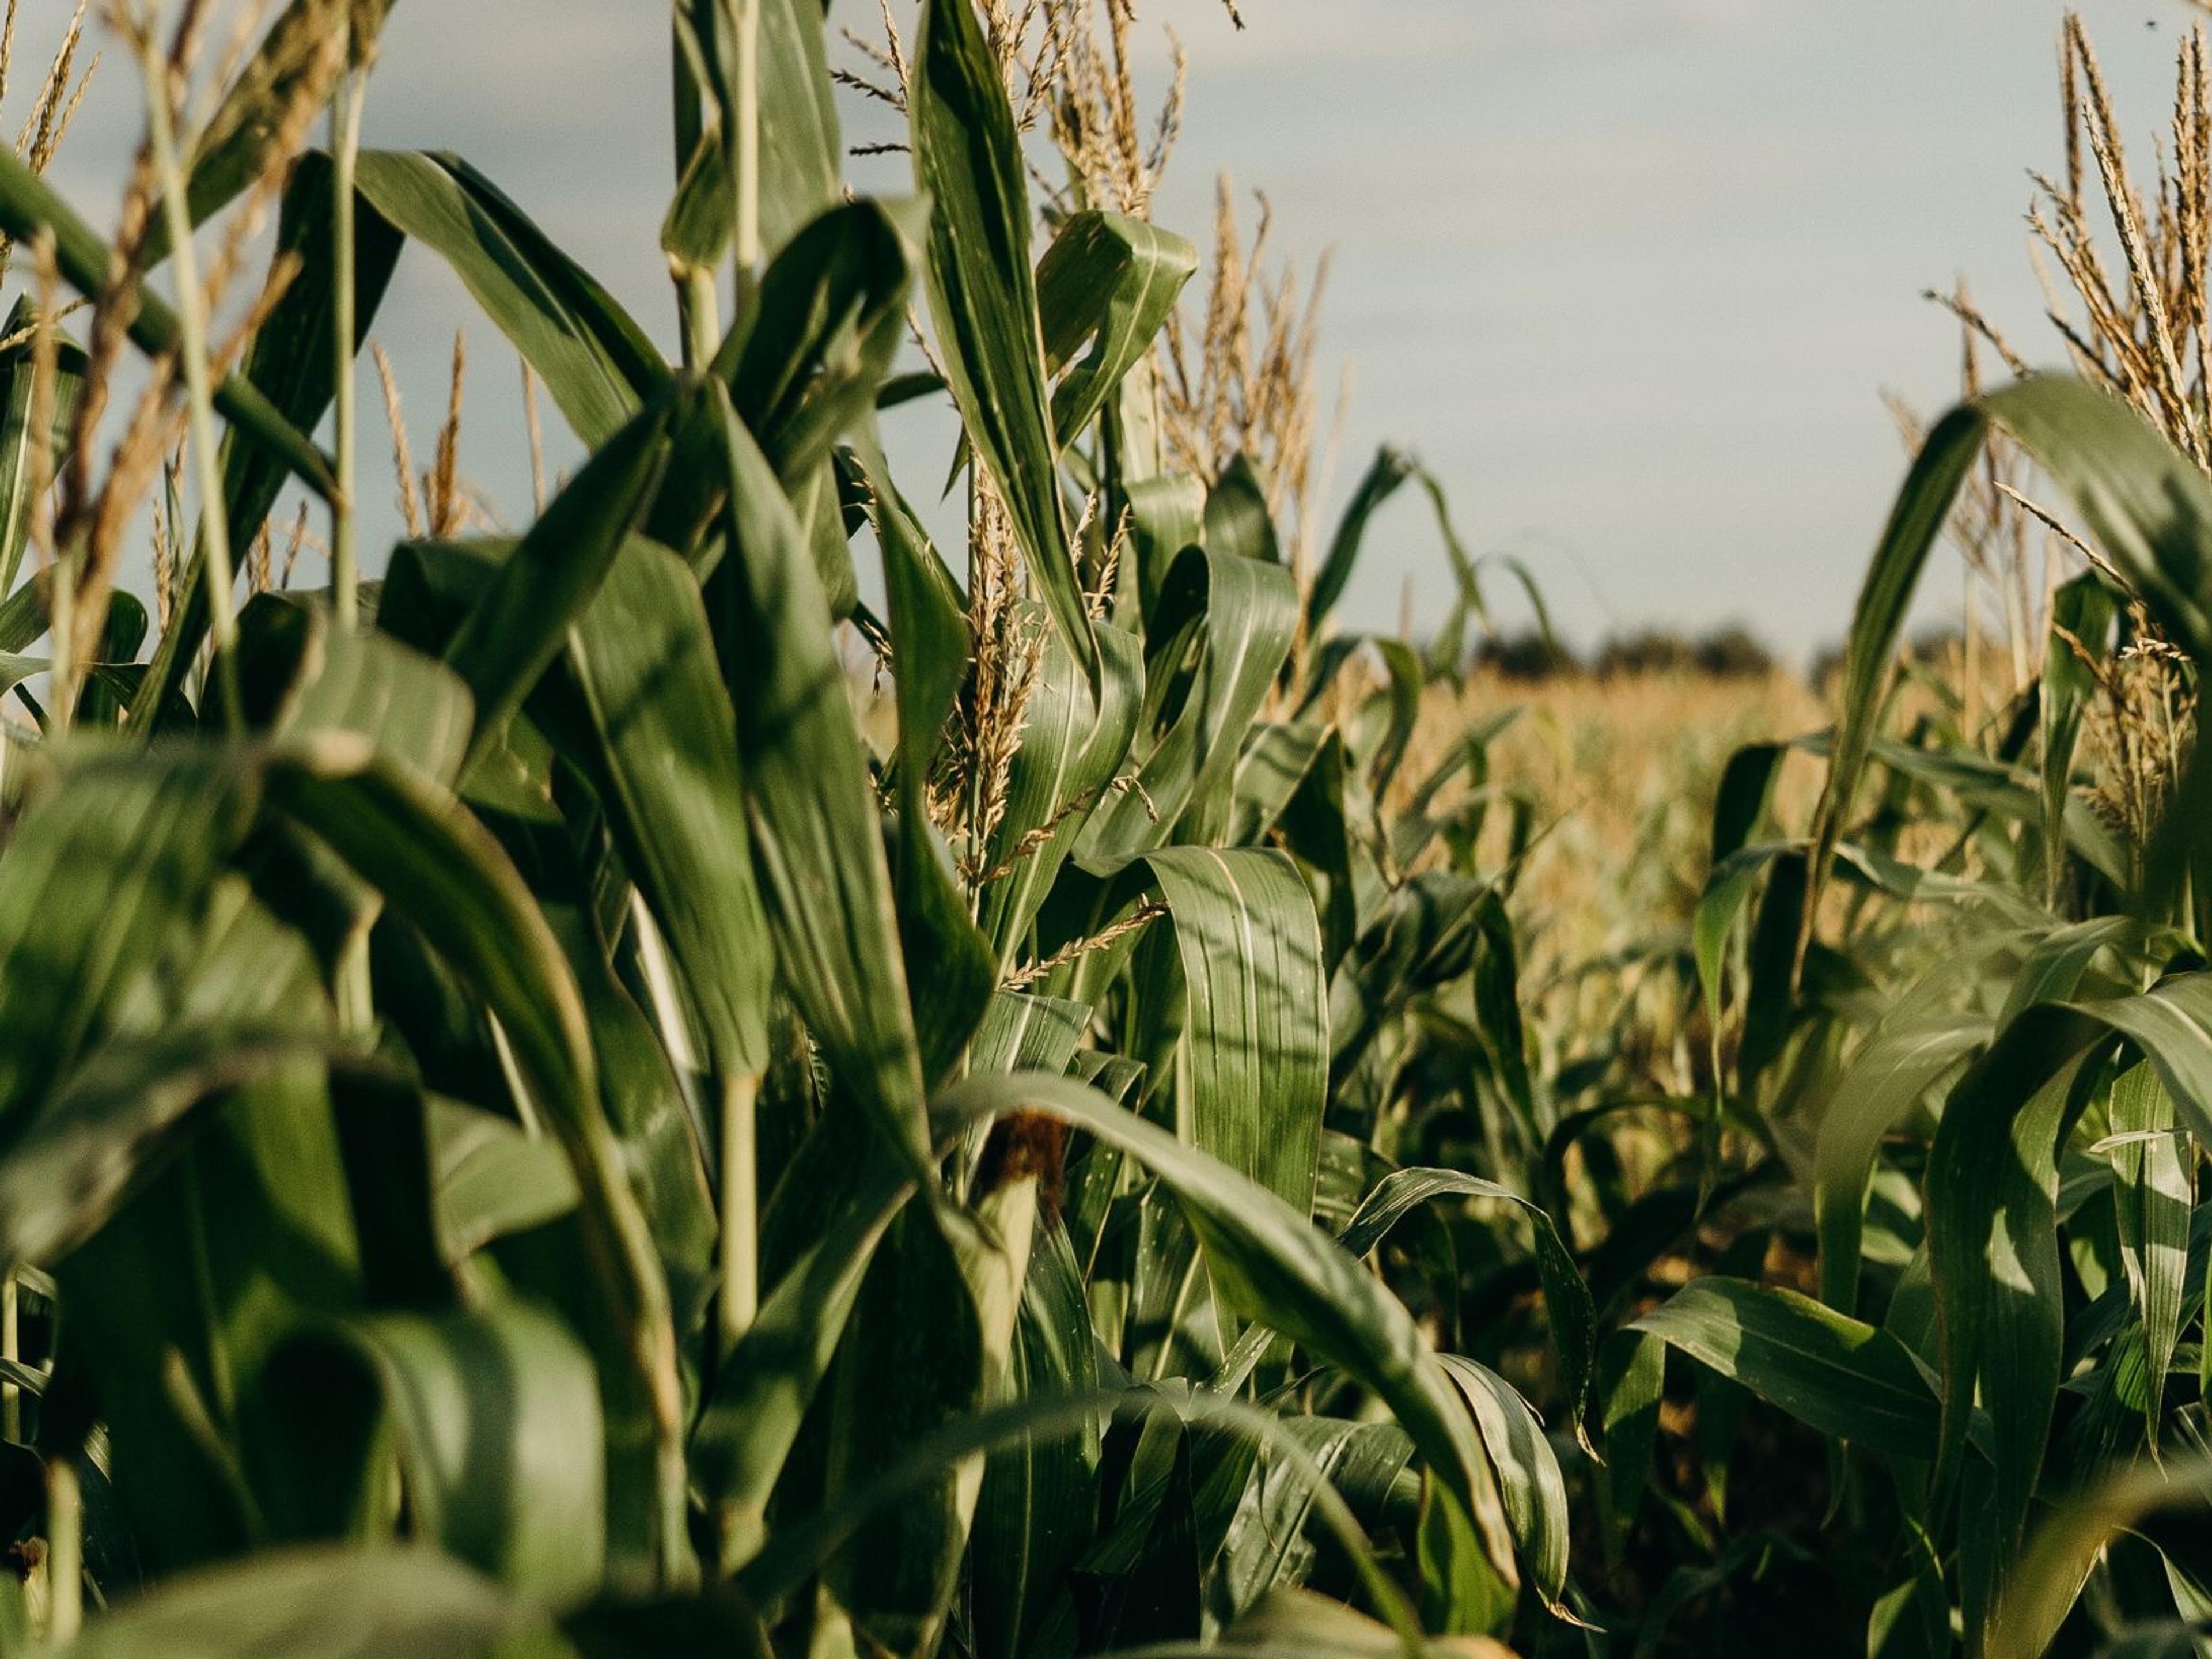 A field of corn.